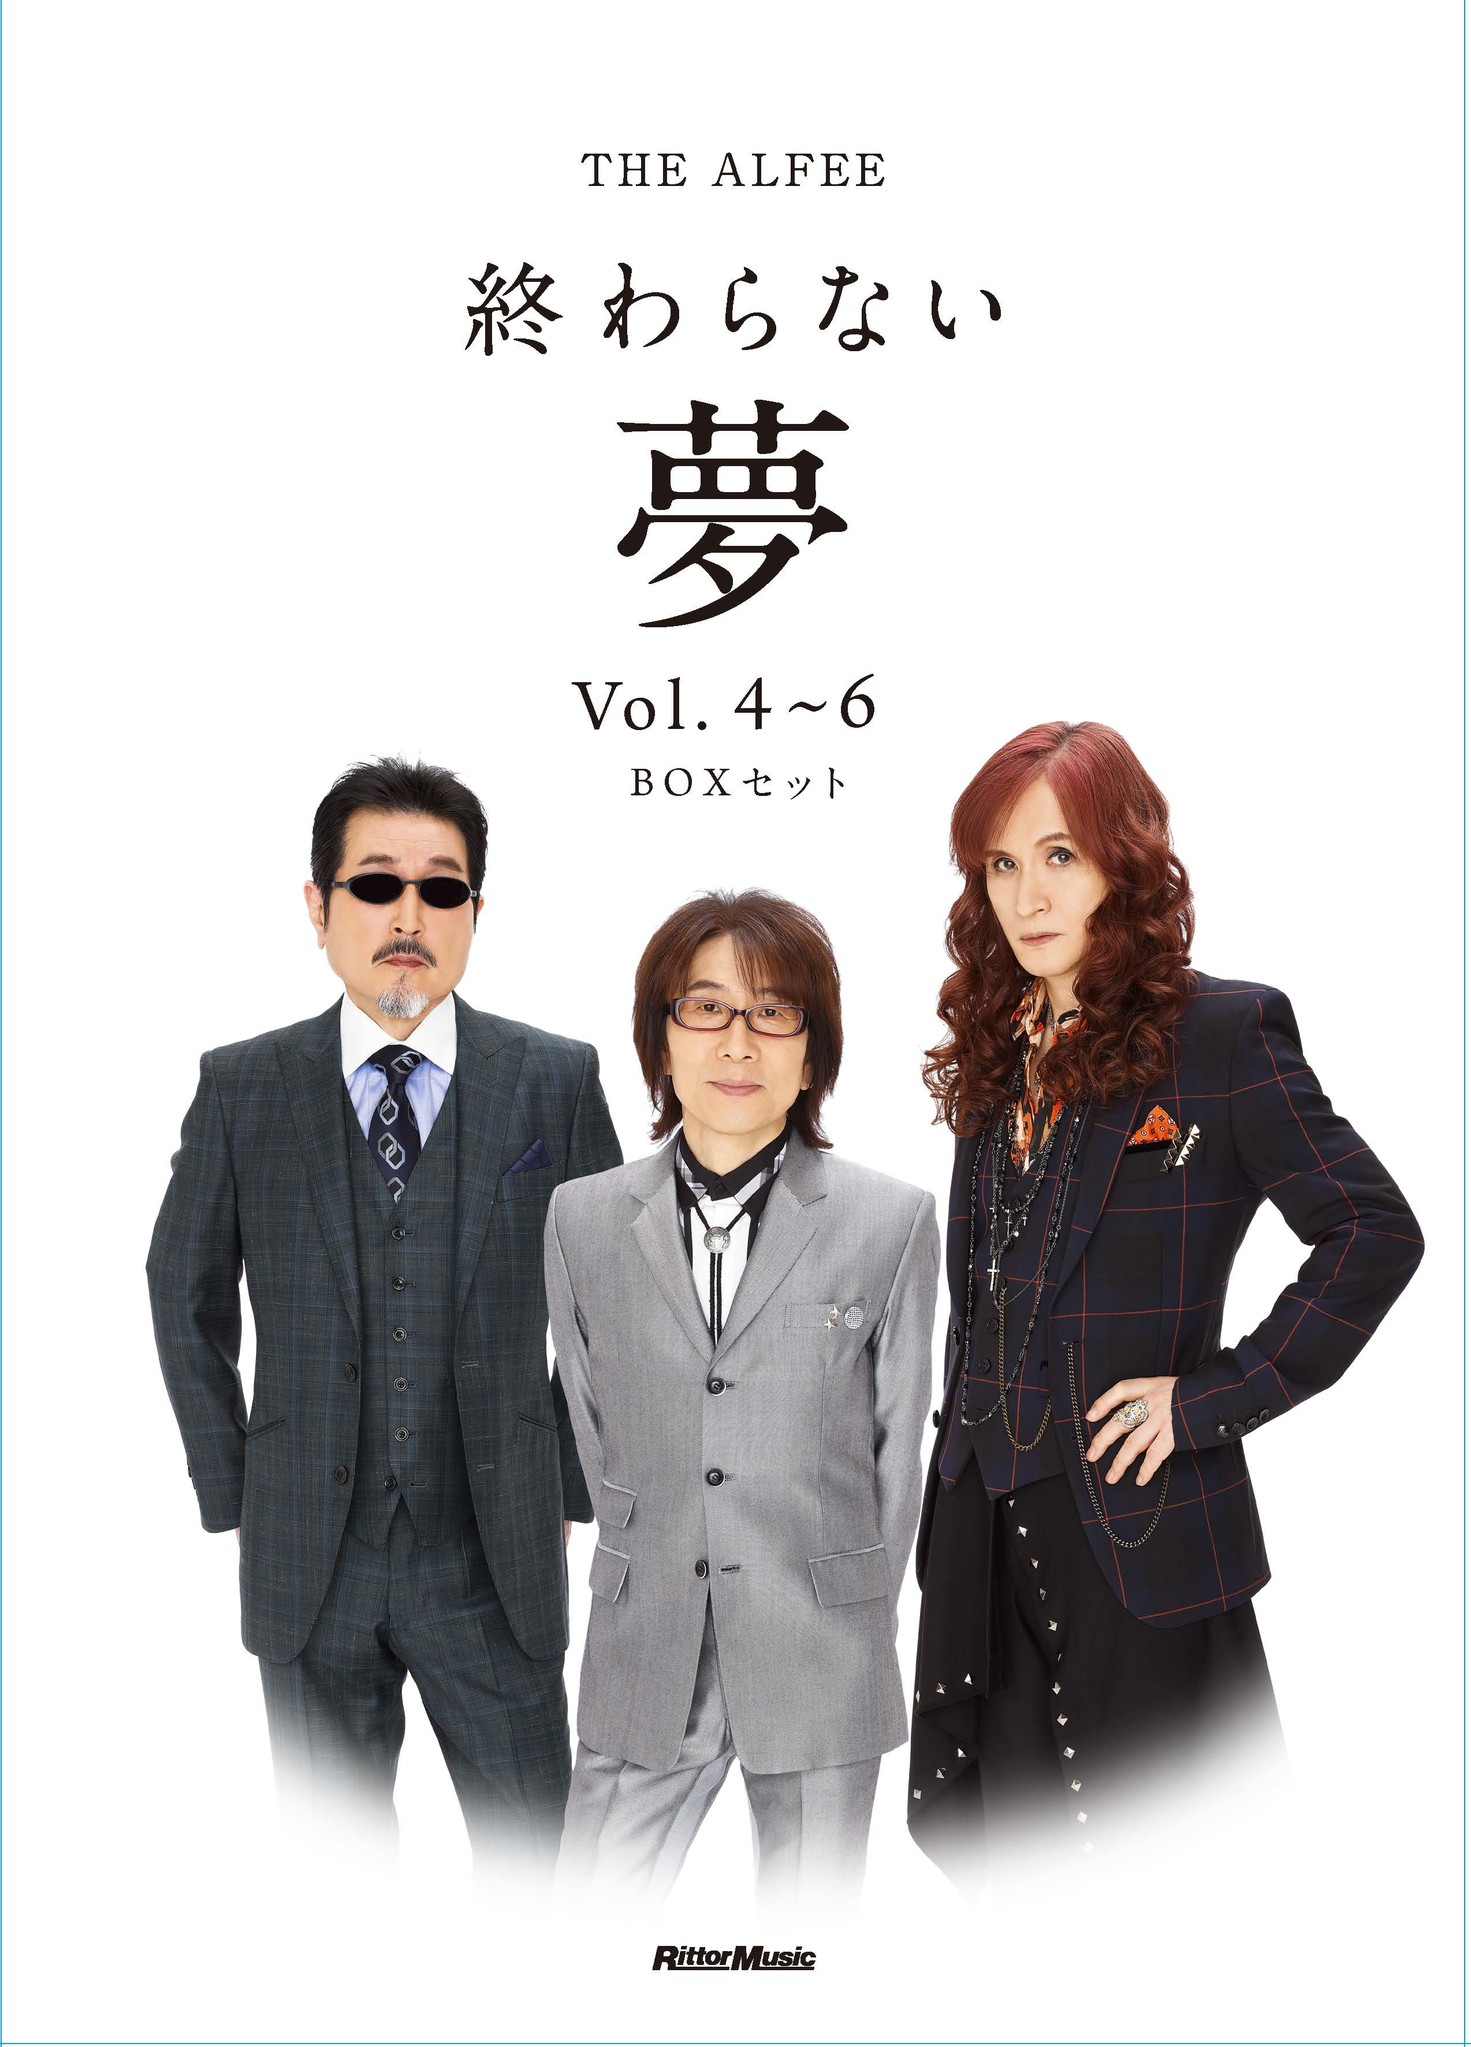 NHK FMの大人気番組『THE ALFEE 終わらない夢』書籍版、待望の続編がいよいよ登場します！